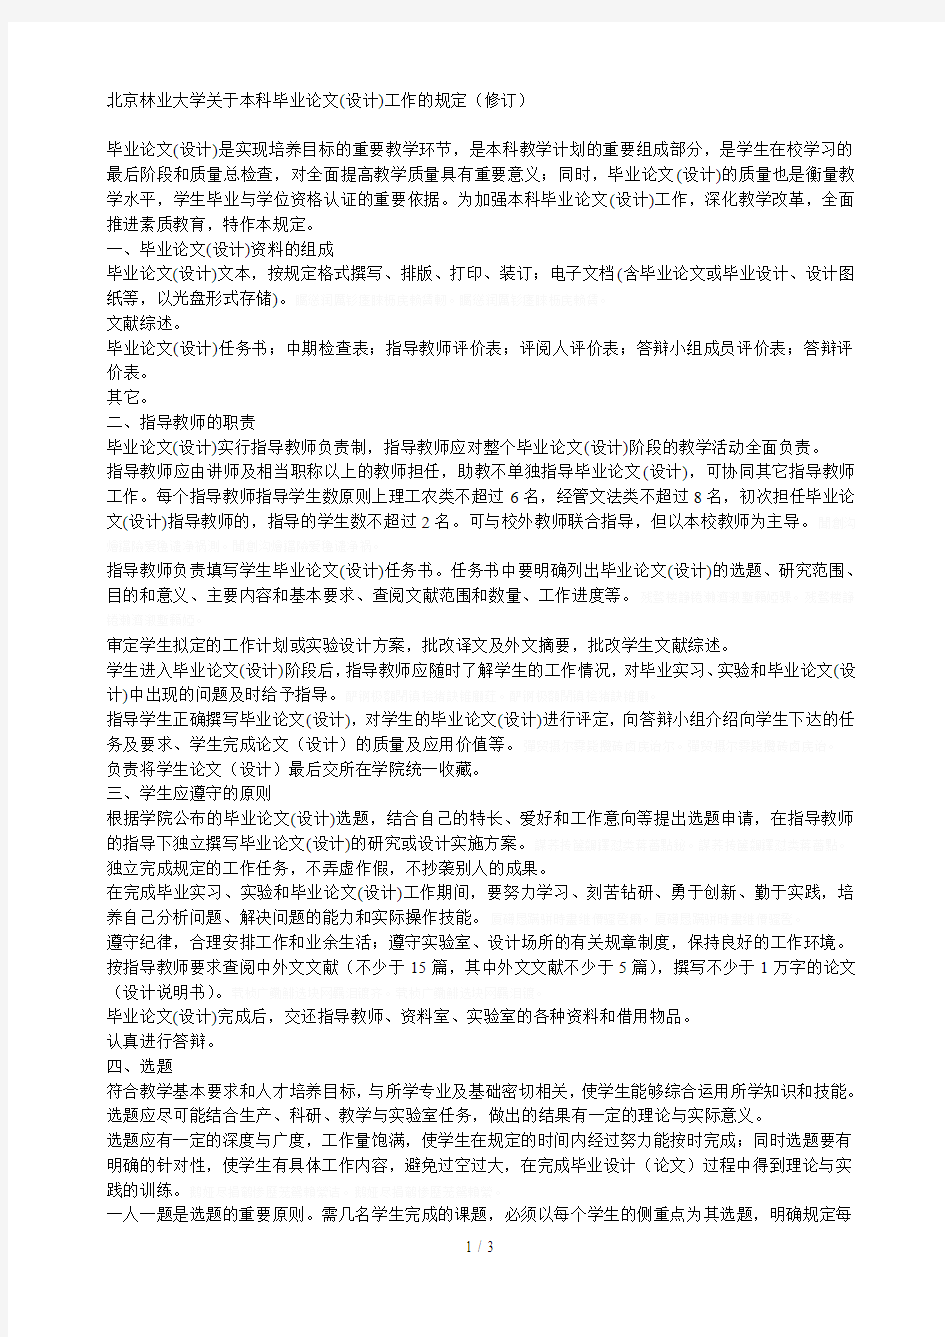 北京林业大学关于本科毕业论文(设计)工作的规定(修订)